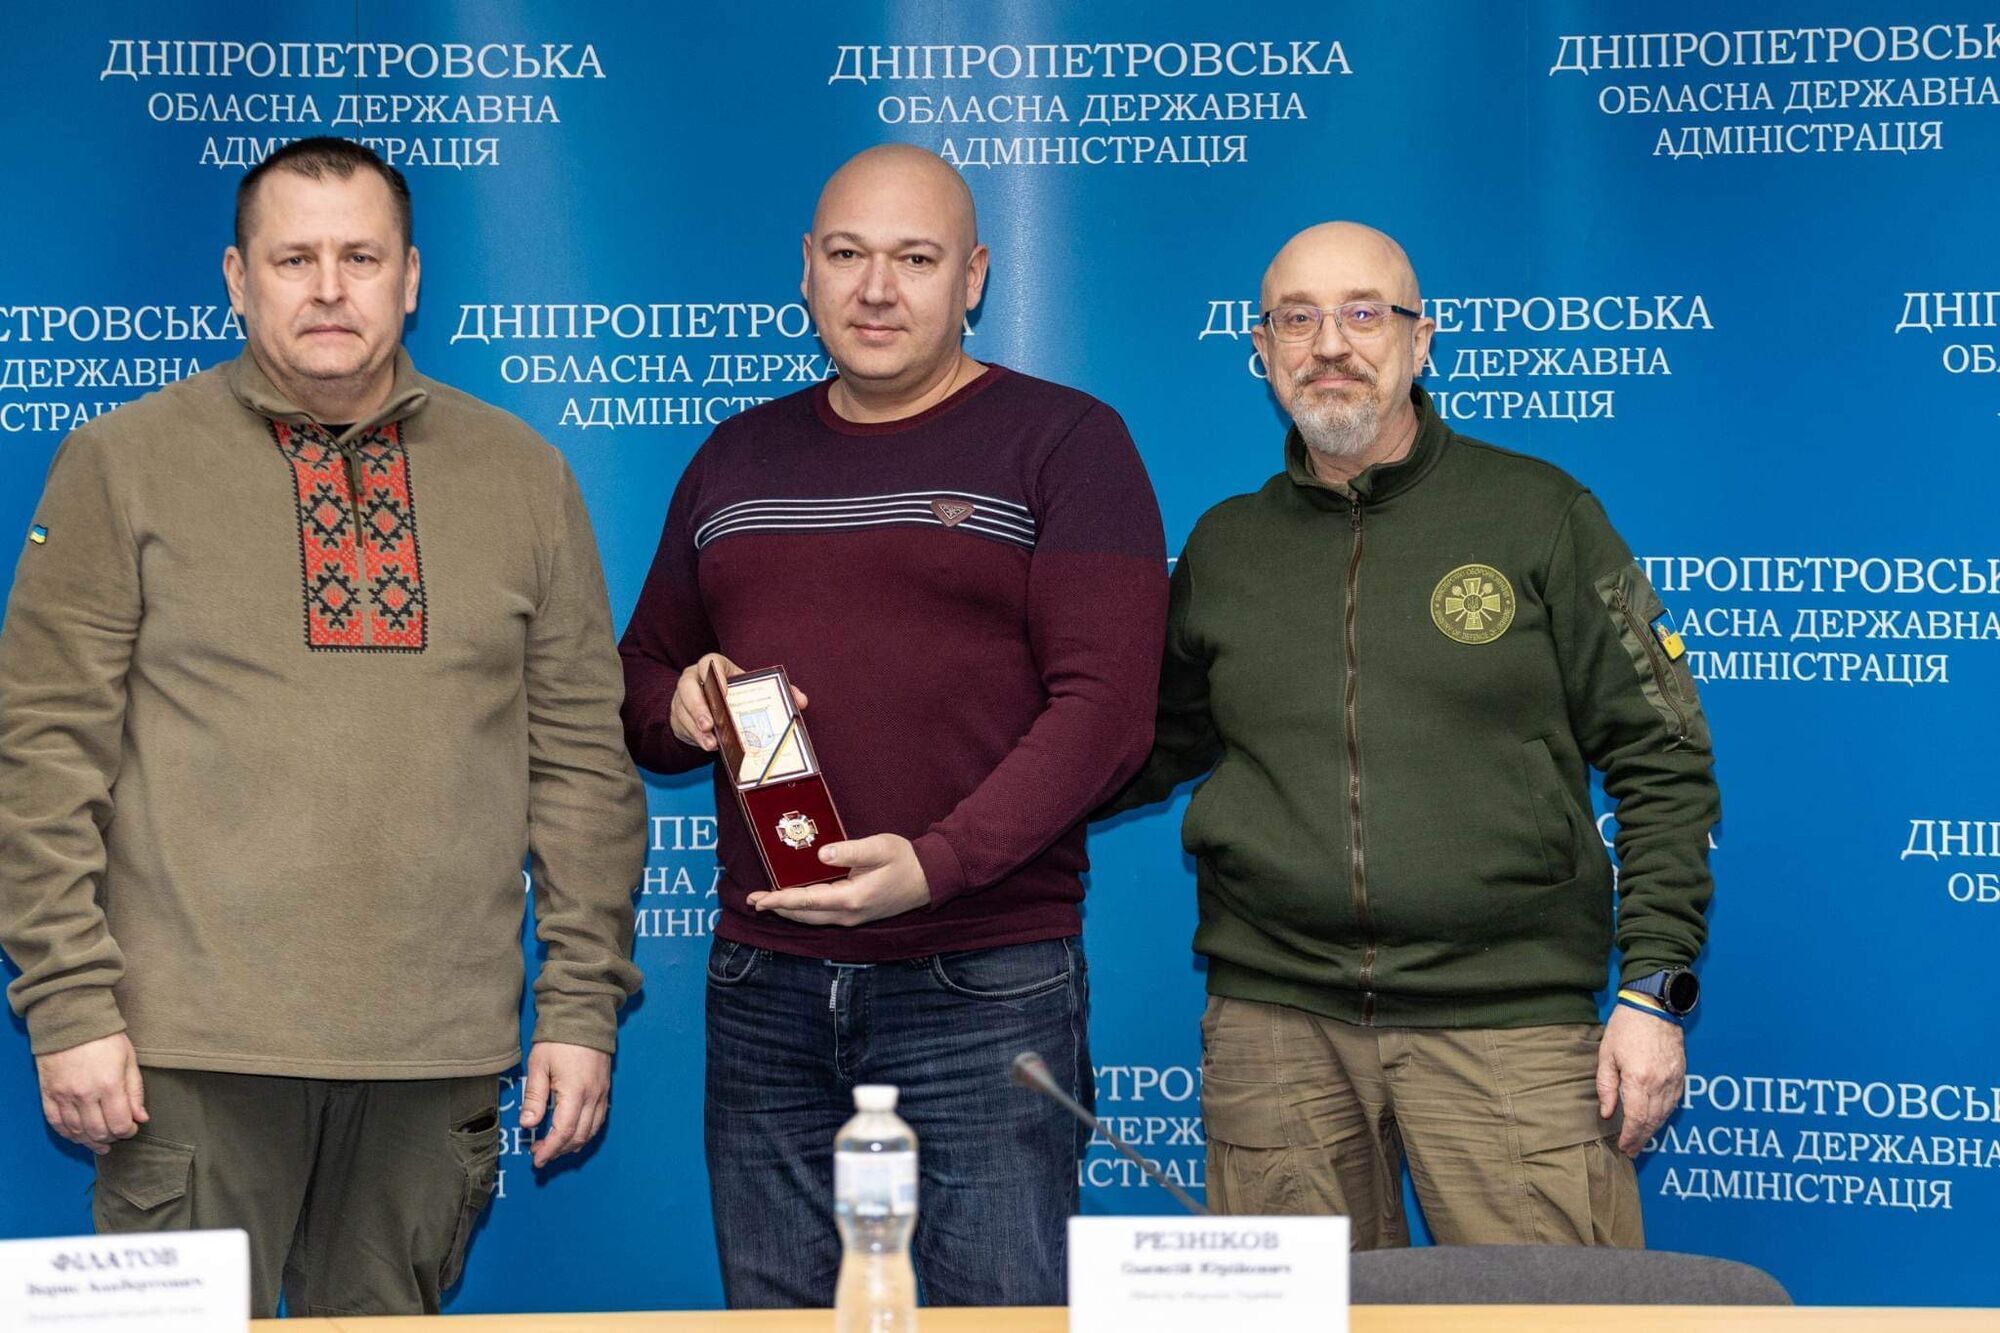 Министр обороны Украины Резников наградил днепровских врачей и коммунальщиков